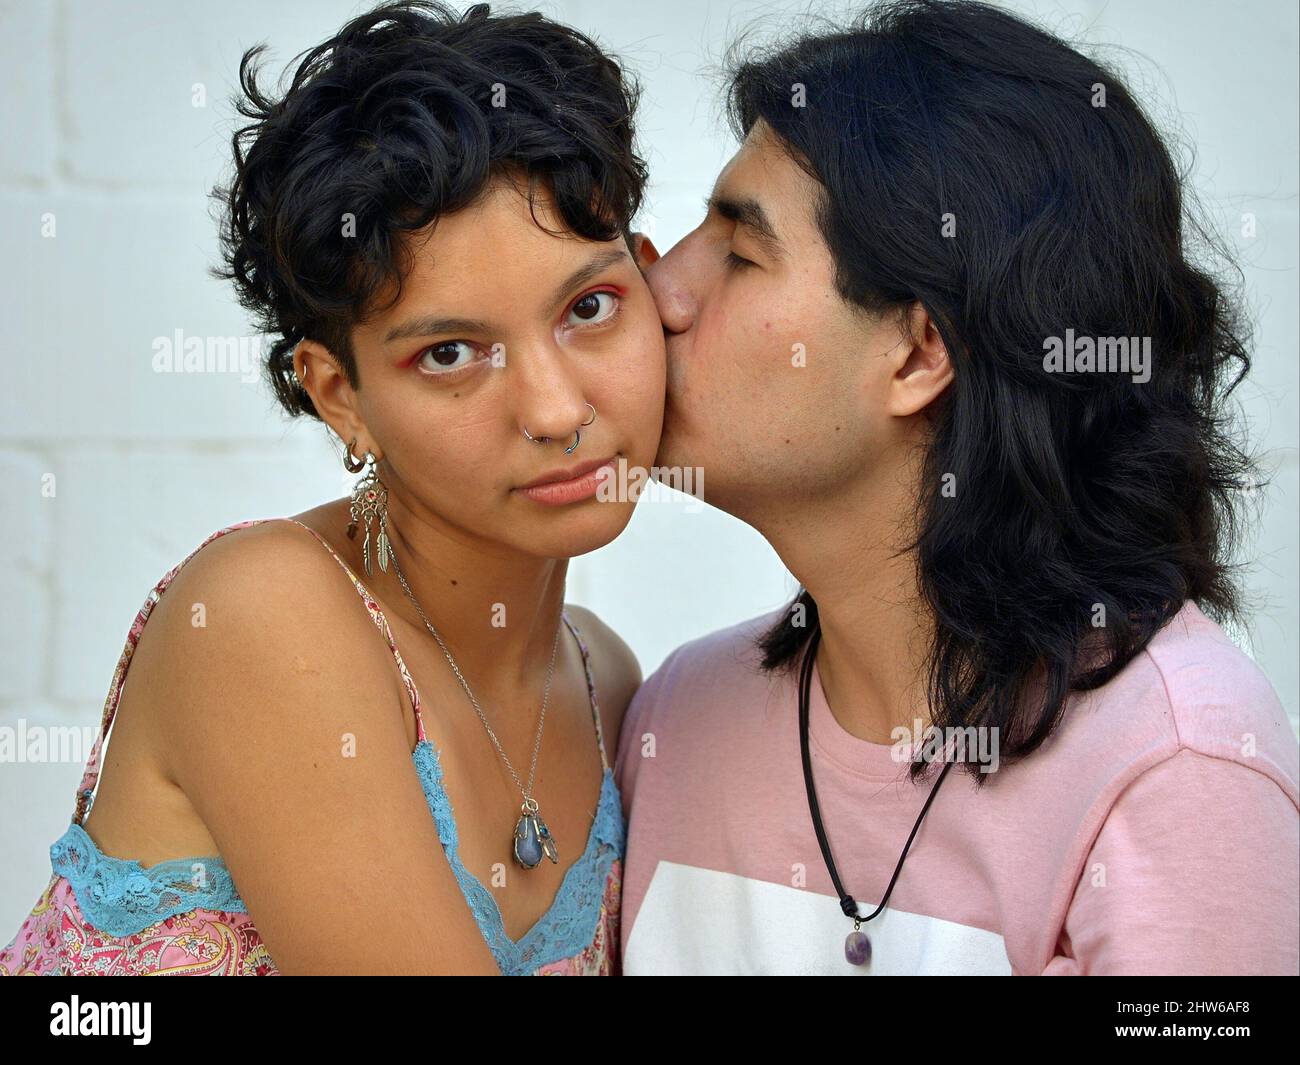 Ein hübscher junger Latino-Mann mit langen Haaren küsst eine schöne junge Latina-Frau mit kurzen Haaren auf der Wange. Stockfoto